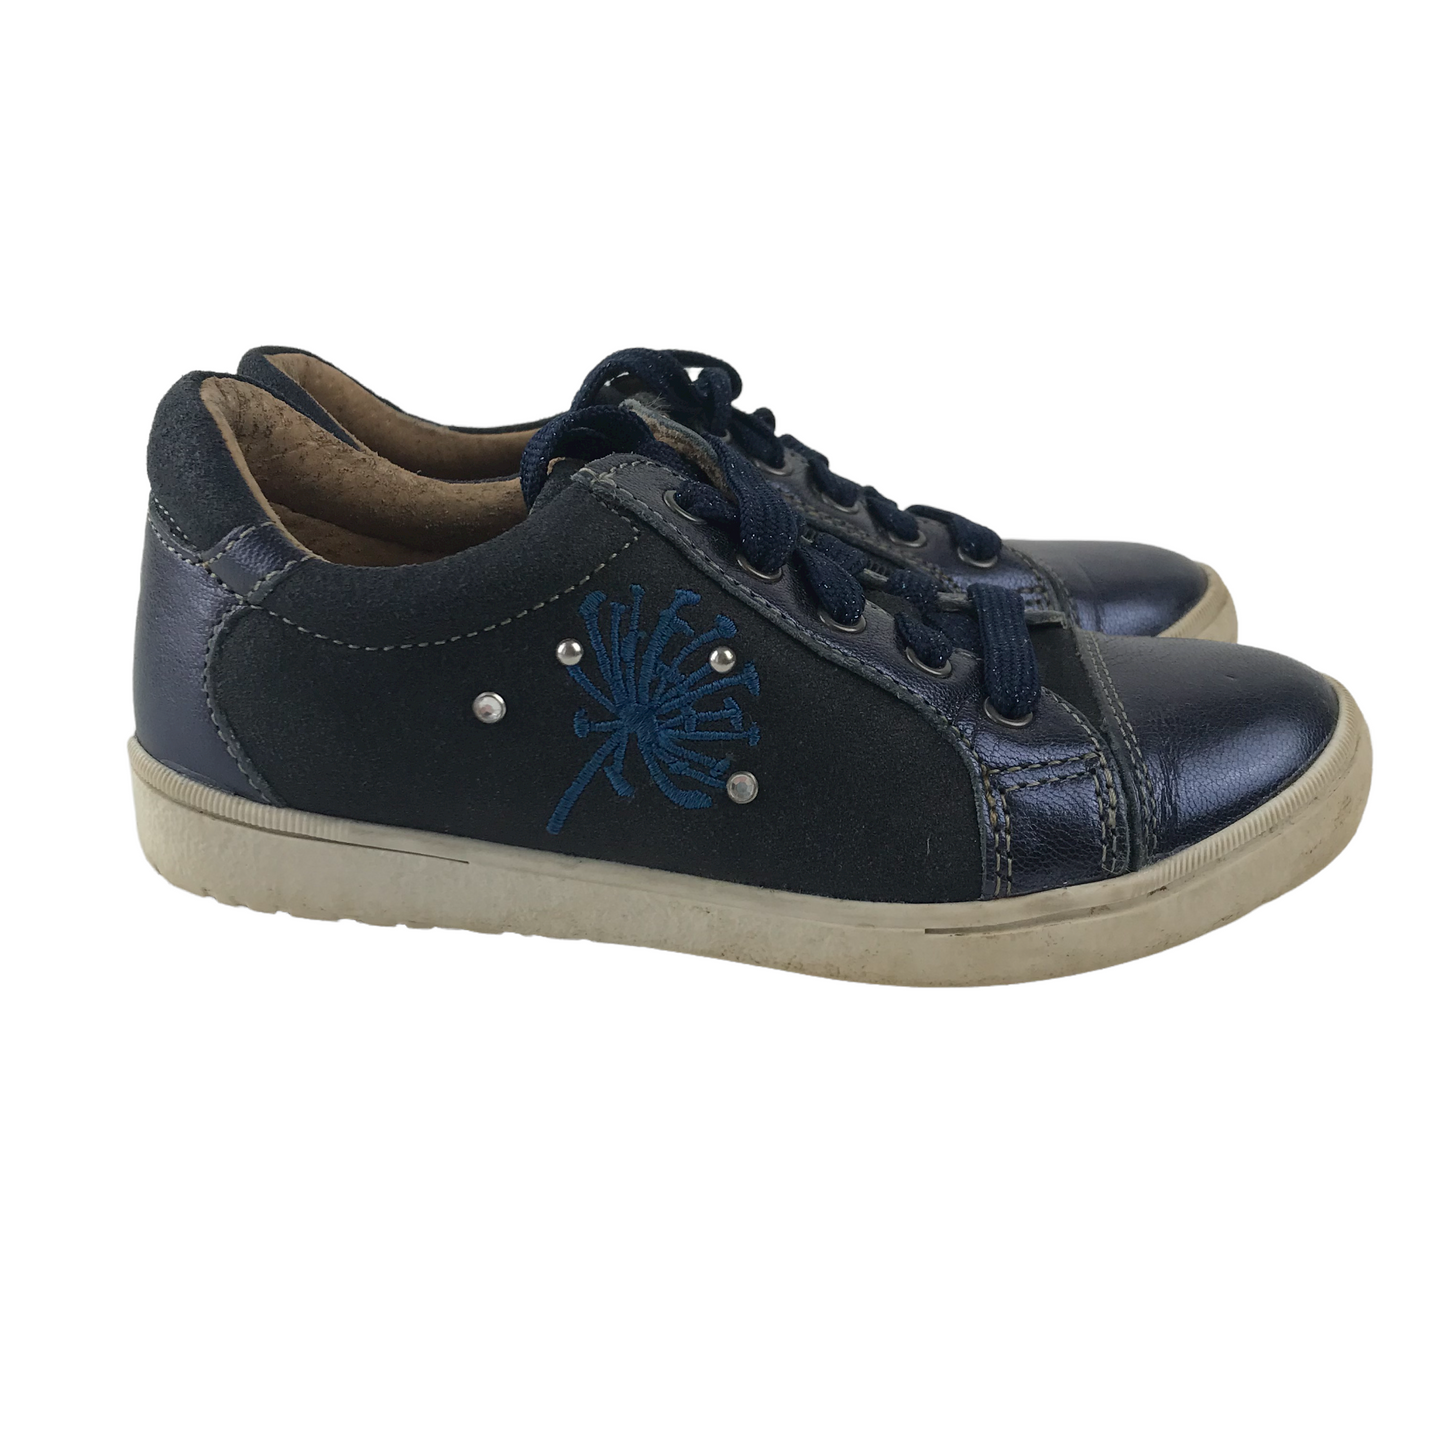 Noël Kids Navy Blue Trainers Shoe Size 11.5 (jr)